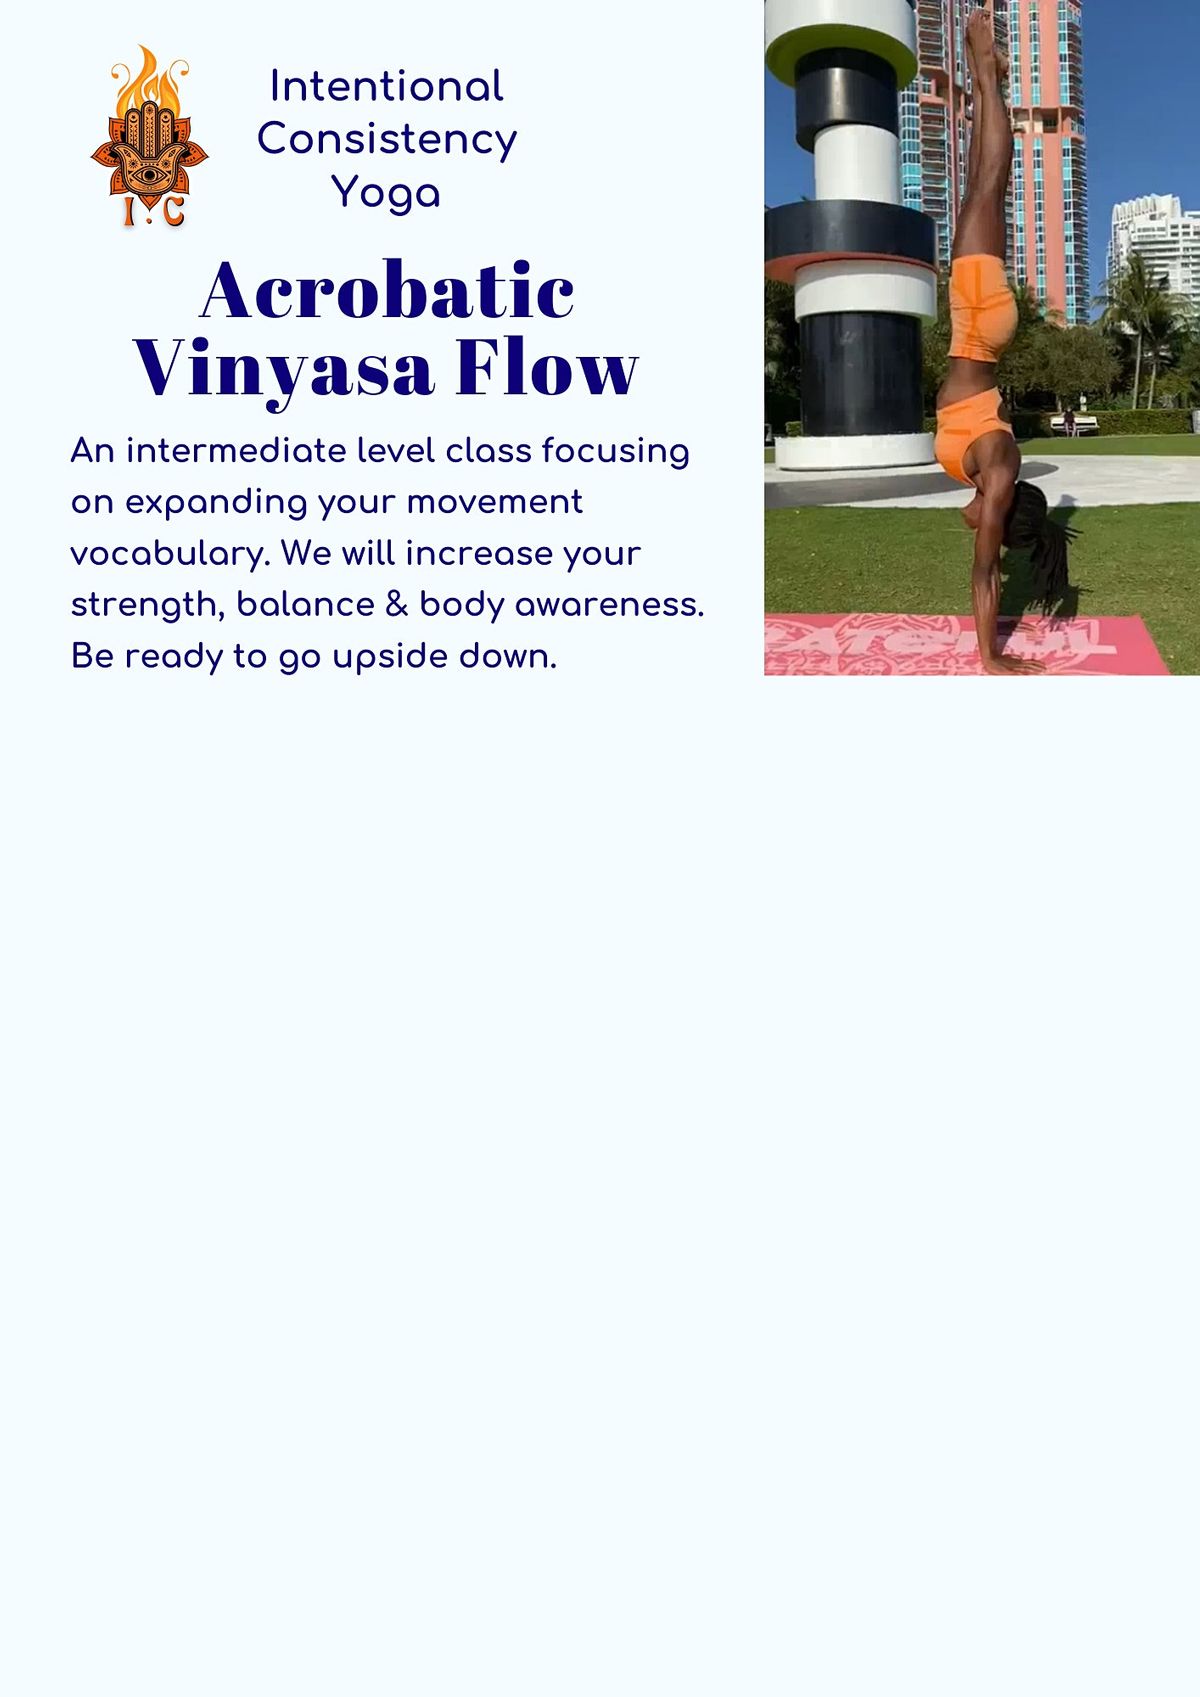 Acrobatic Vinyasa Flow